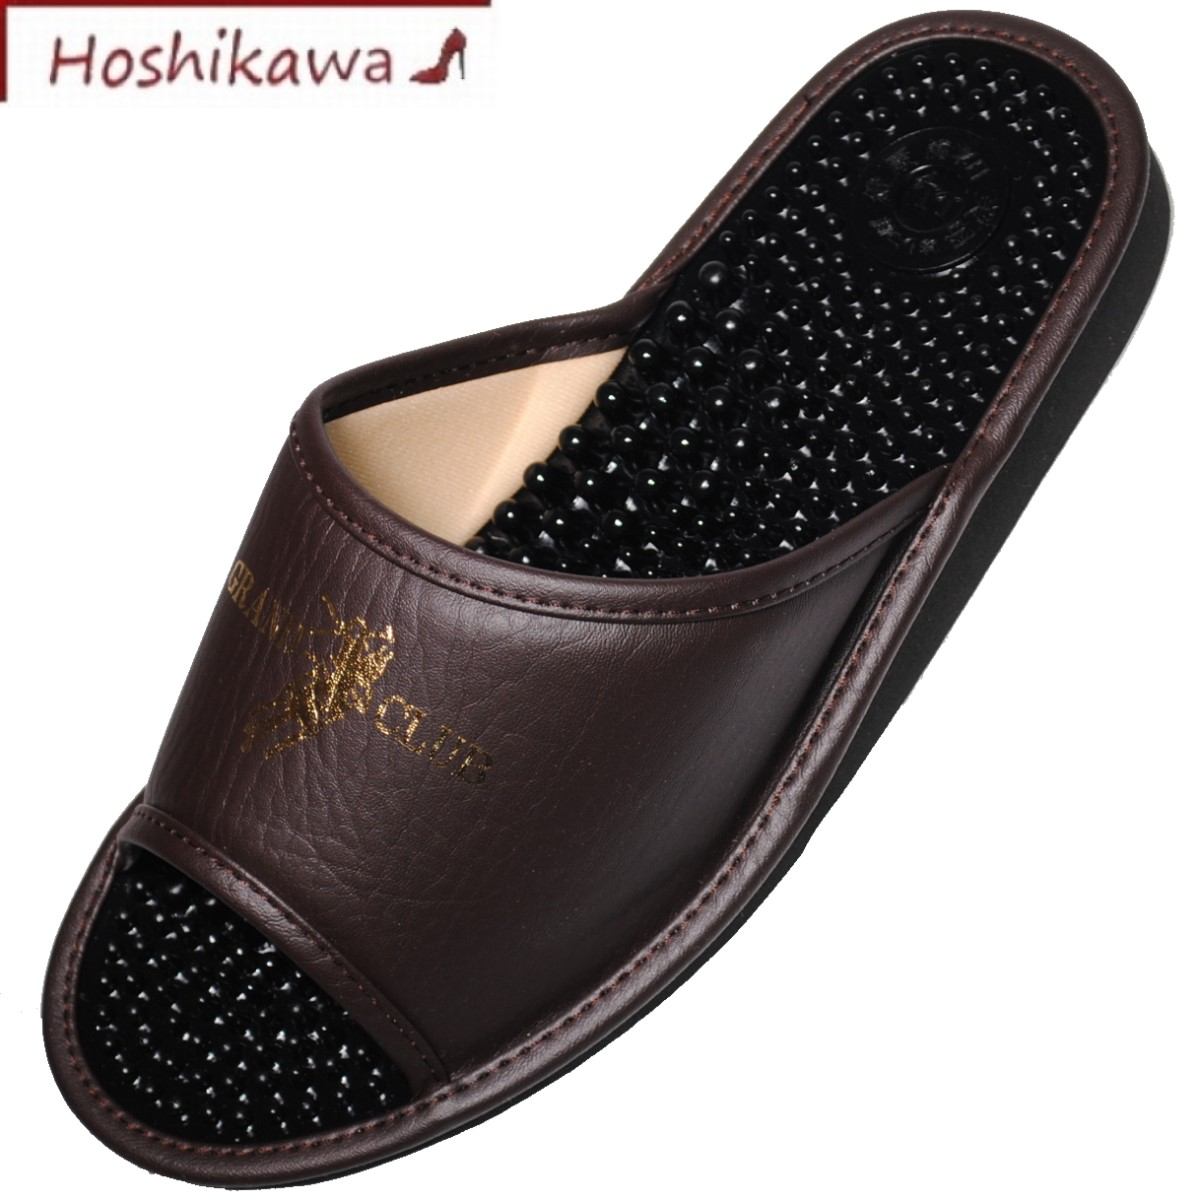 楽天靴のHOSHIKAWA楽天市場店【靴のHOSHIKAWA】 『健康サンダル 752』メンズ スリッパ3L ダークブラウンルームシューズ 前開きツボ押し 軽い